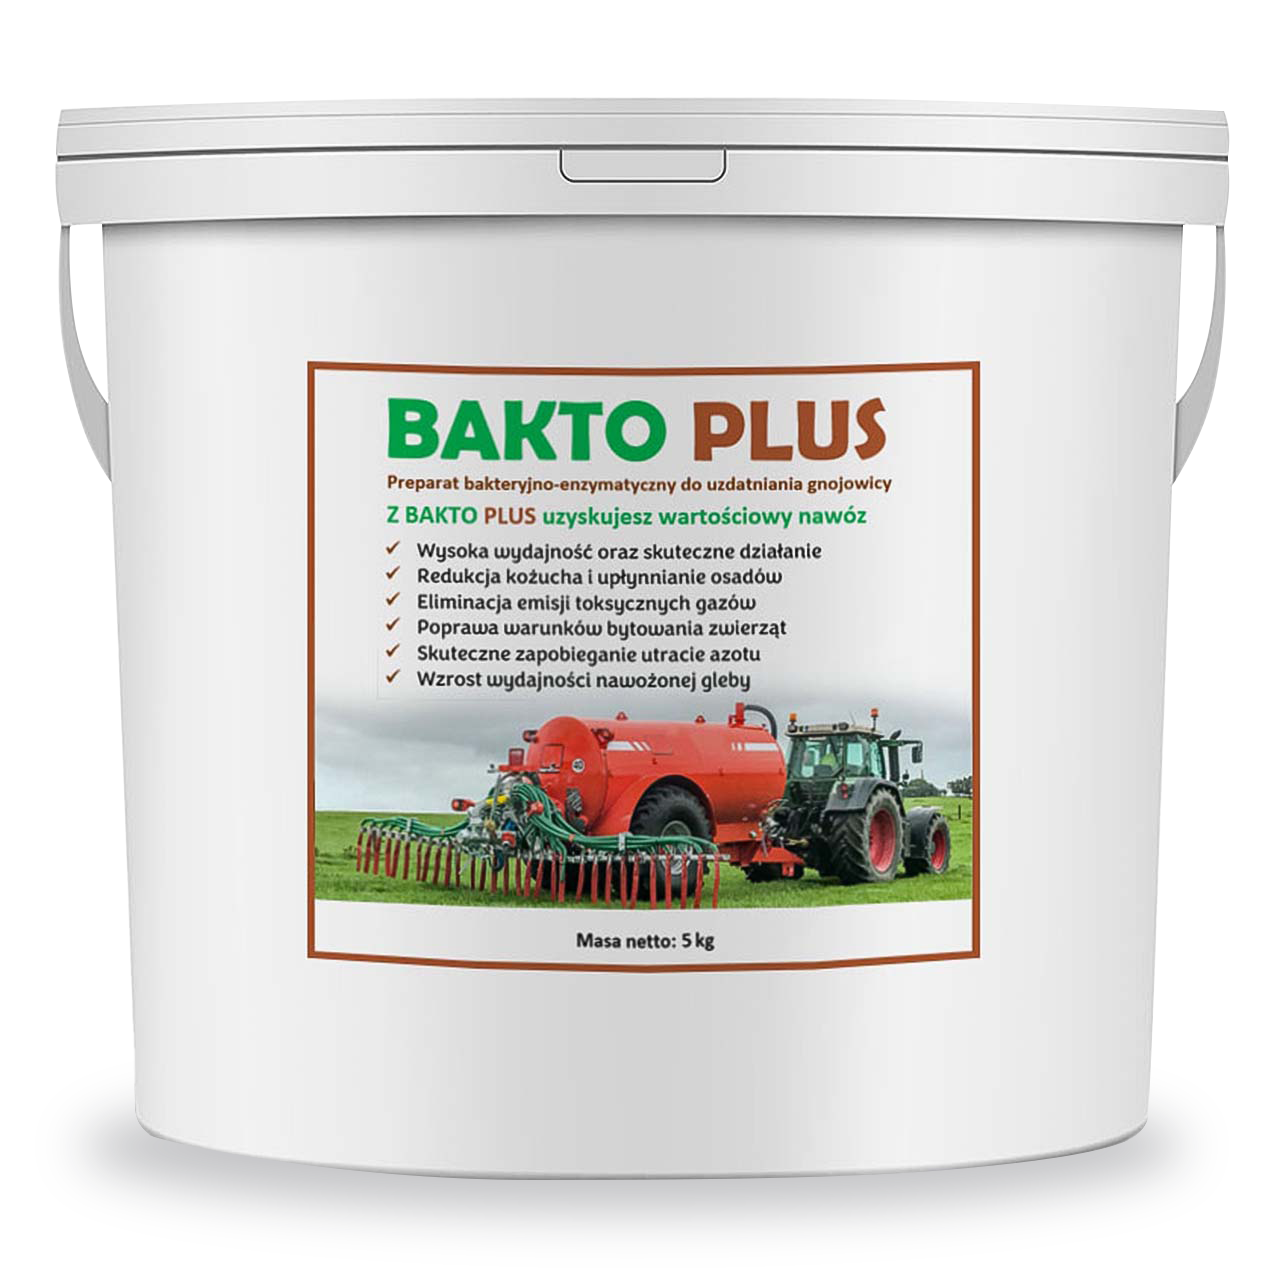 Bakto Plus - Preparat Bakteryjno-enzymatyczny do uzdatniania gnojowicy - 5Kg